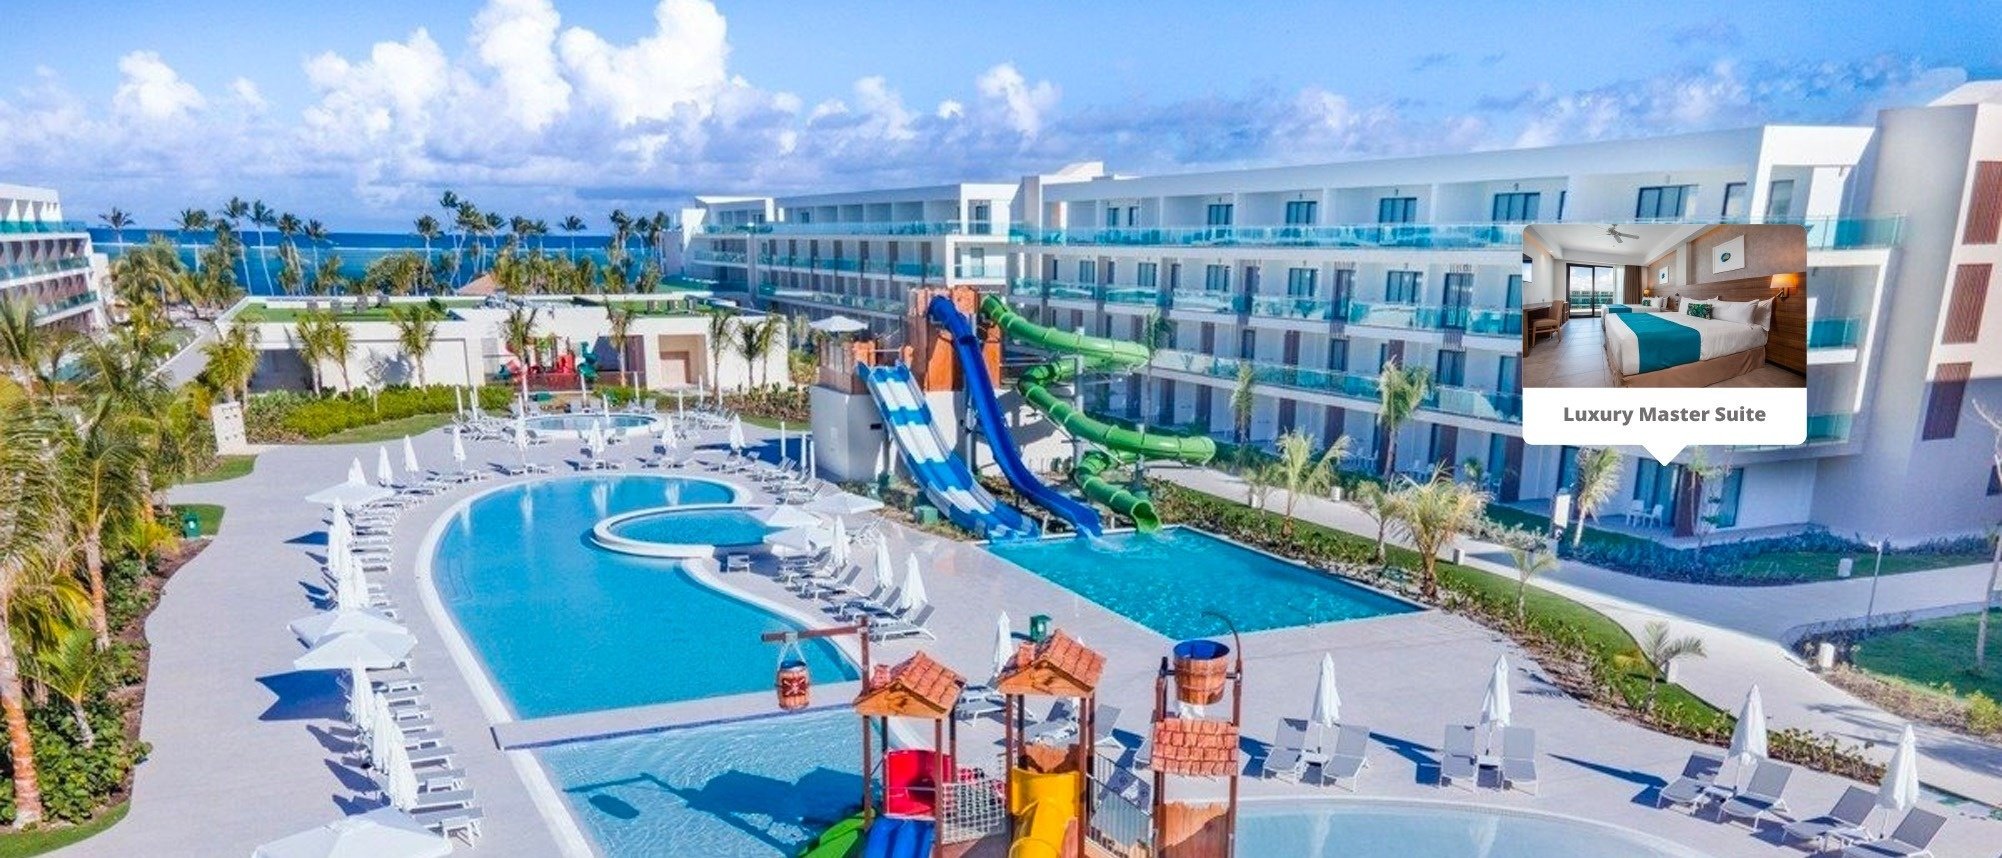 ein Hotel mit einem großen Pool und einem Wasserspielplatz